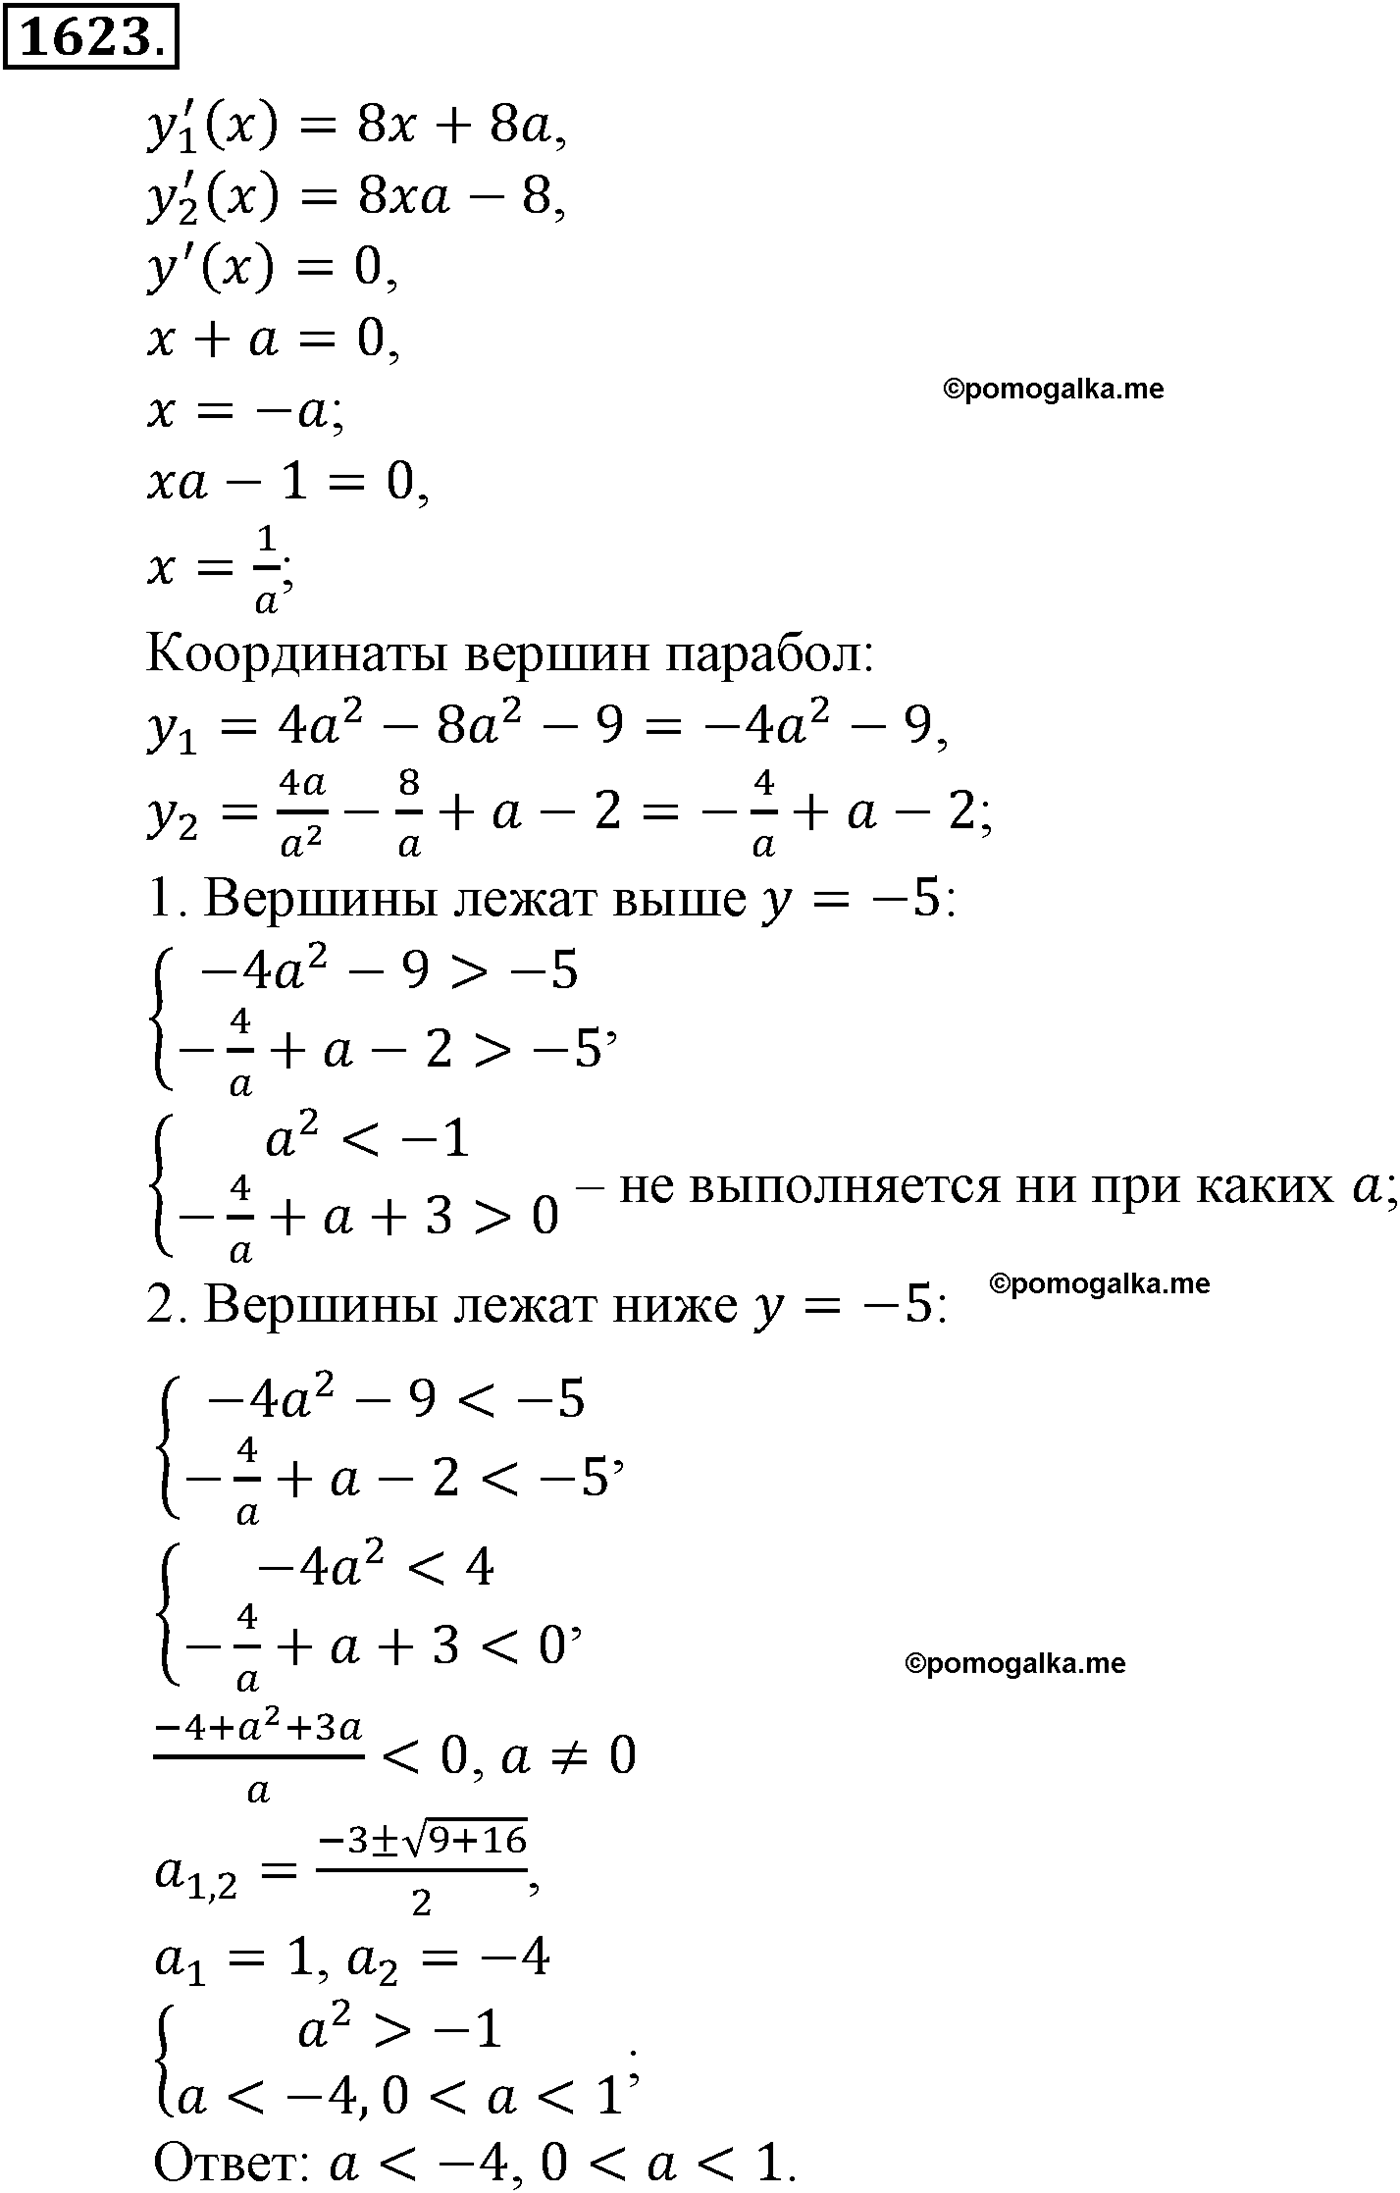 разбор задачи №1623 по алгебре за 10-11 класс из учебника Алимова, Колягина